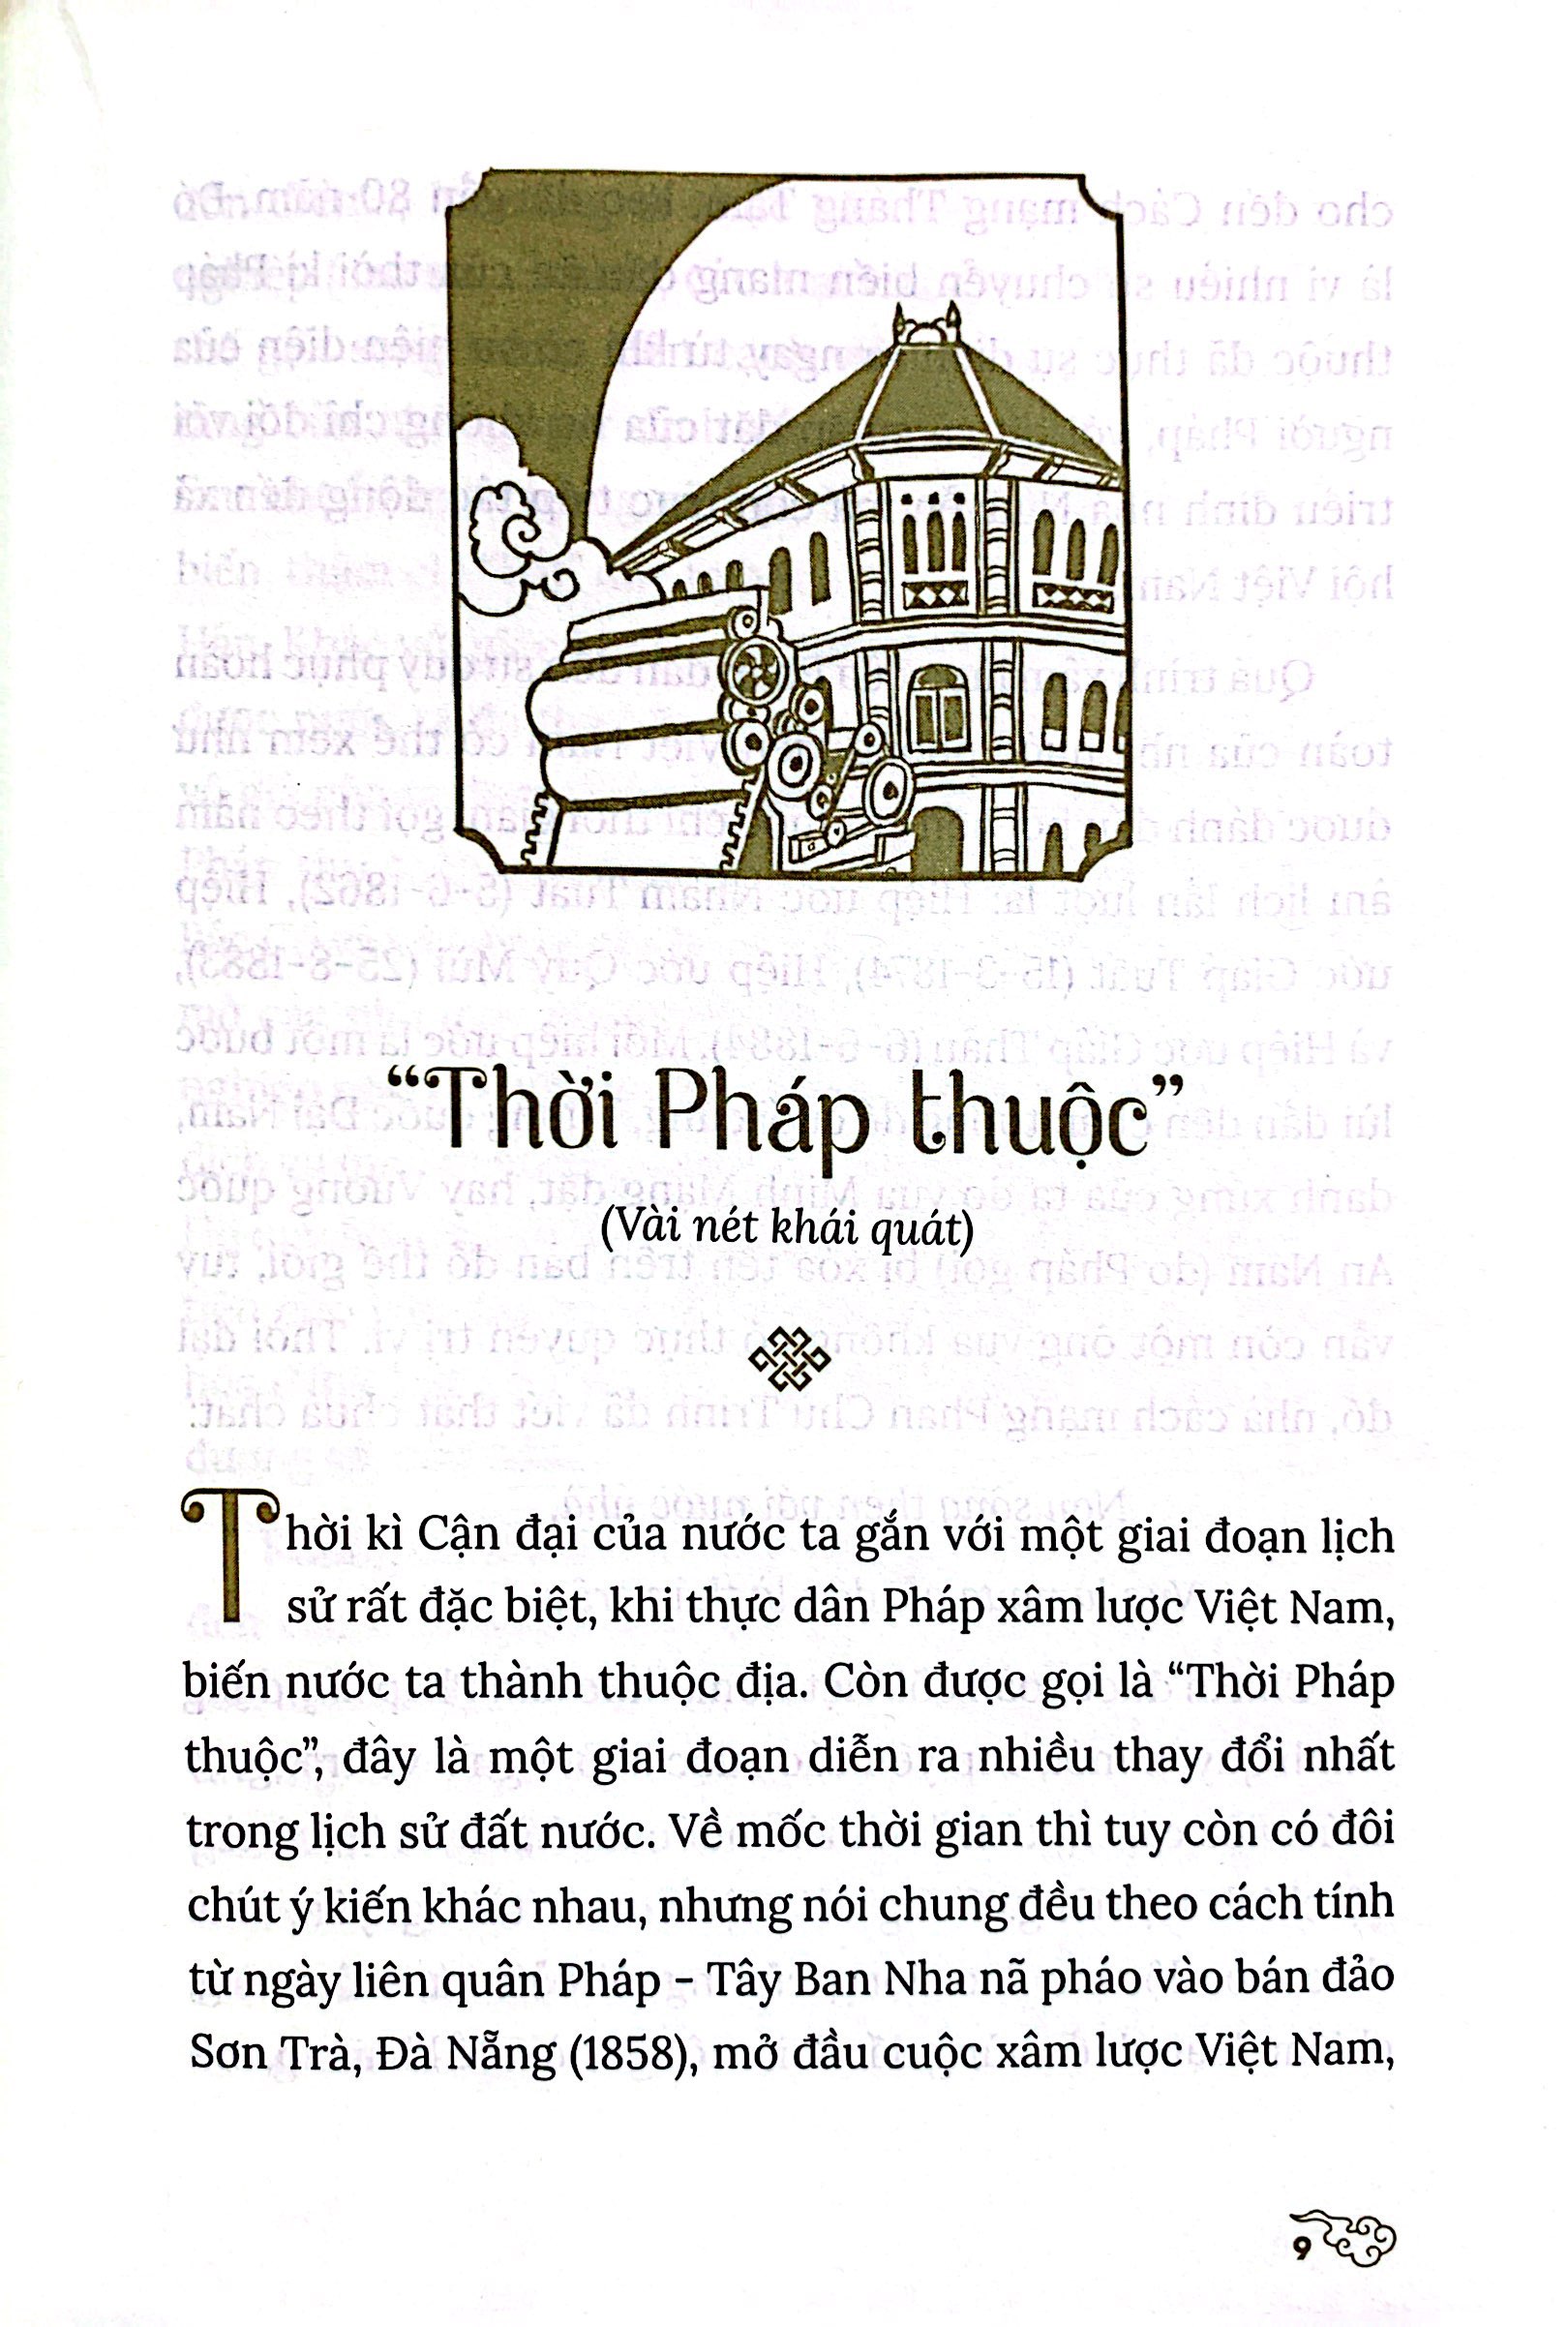 Thăng Long Kinh Kì - Kẻ Chợ: Hà Nội Thời Cận Đại PDF